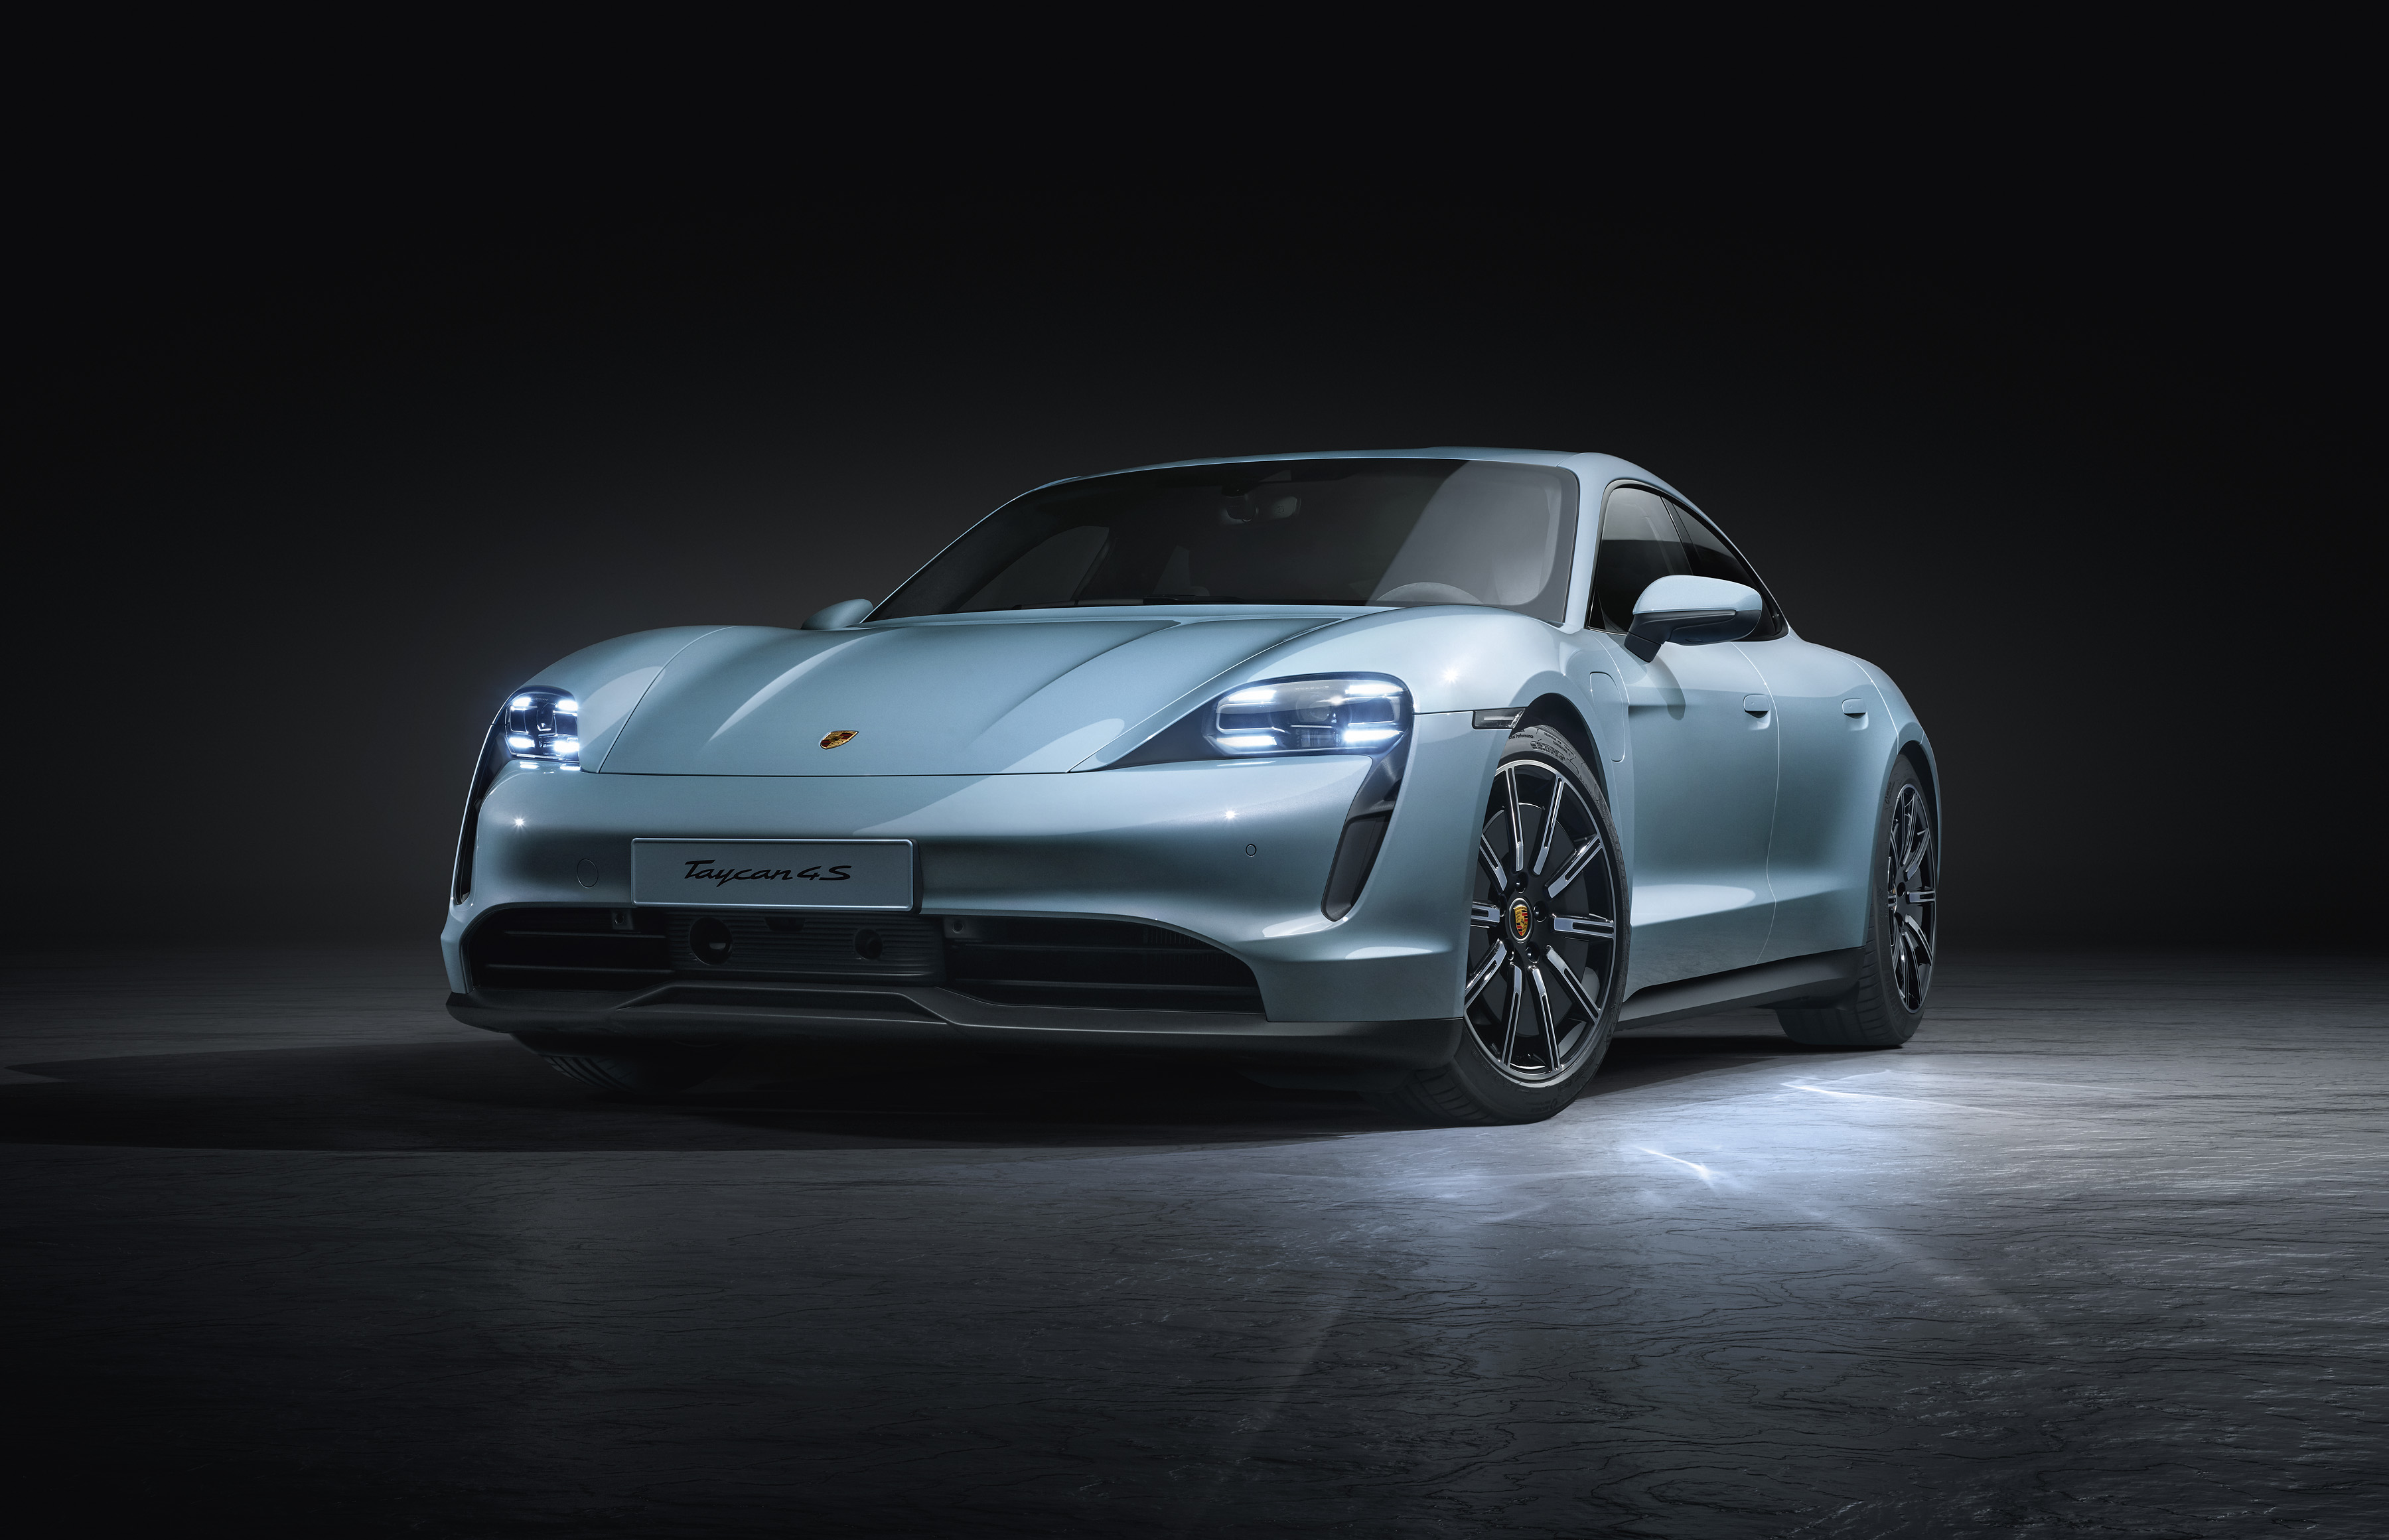 Porsche rozširuje portfólio elektrickej novinky o základnú verziu. Čo ponúkne najlacnejší Taycan?